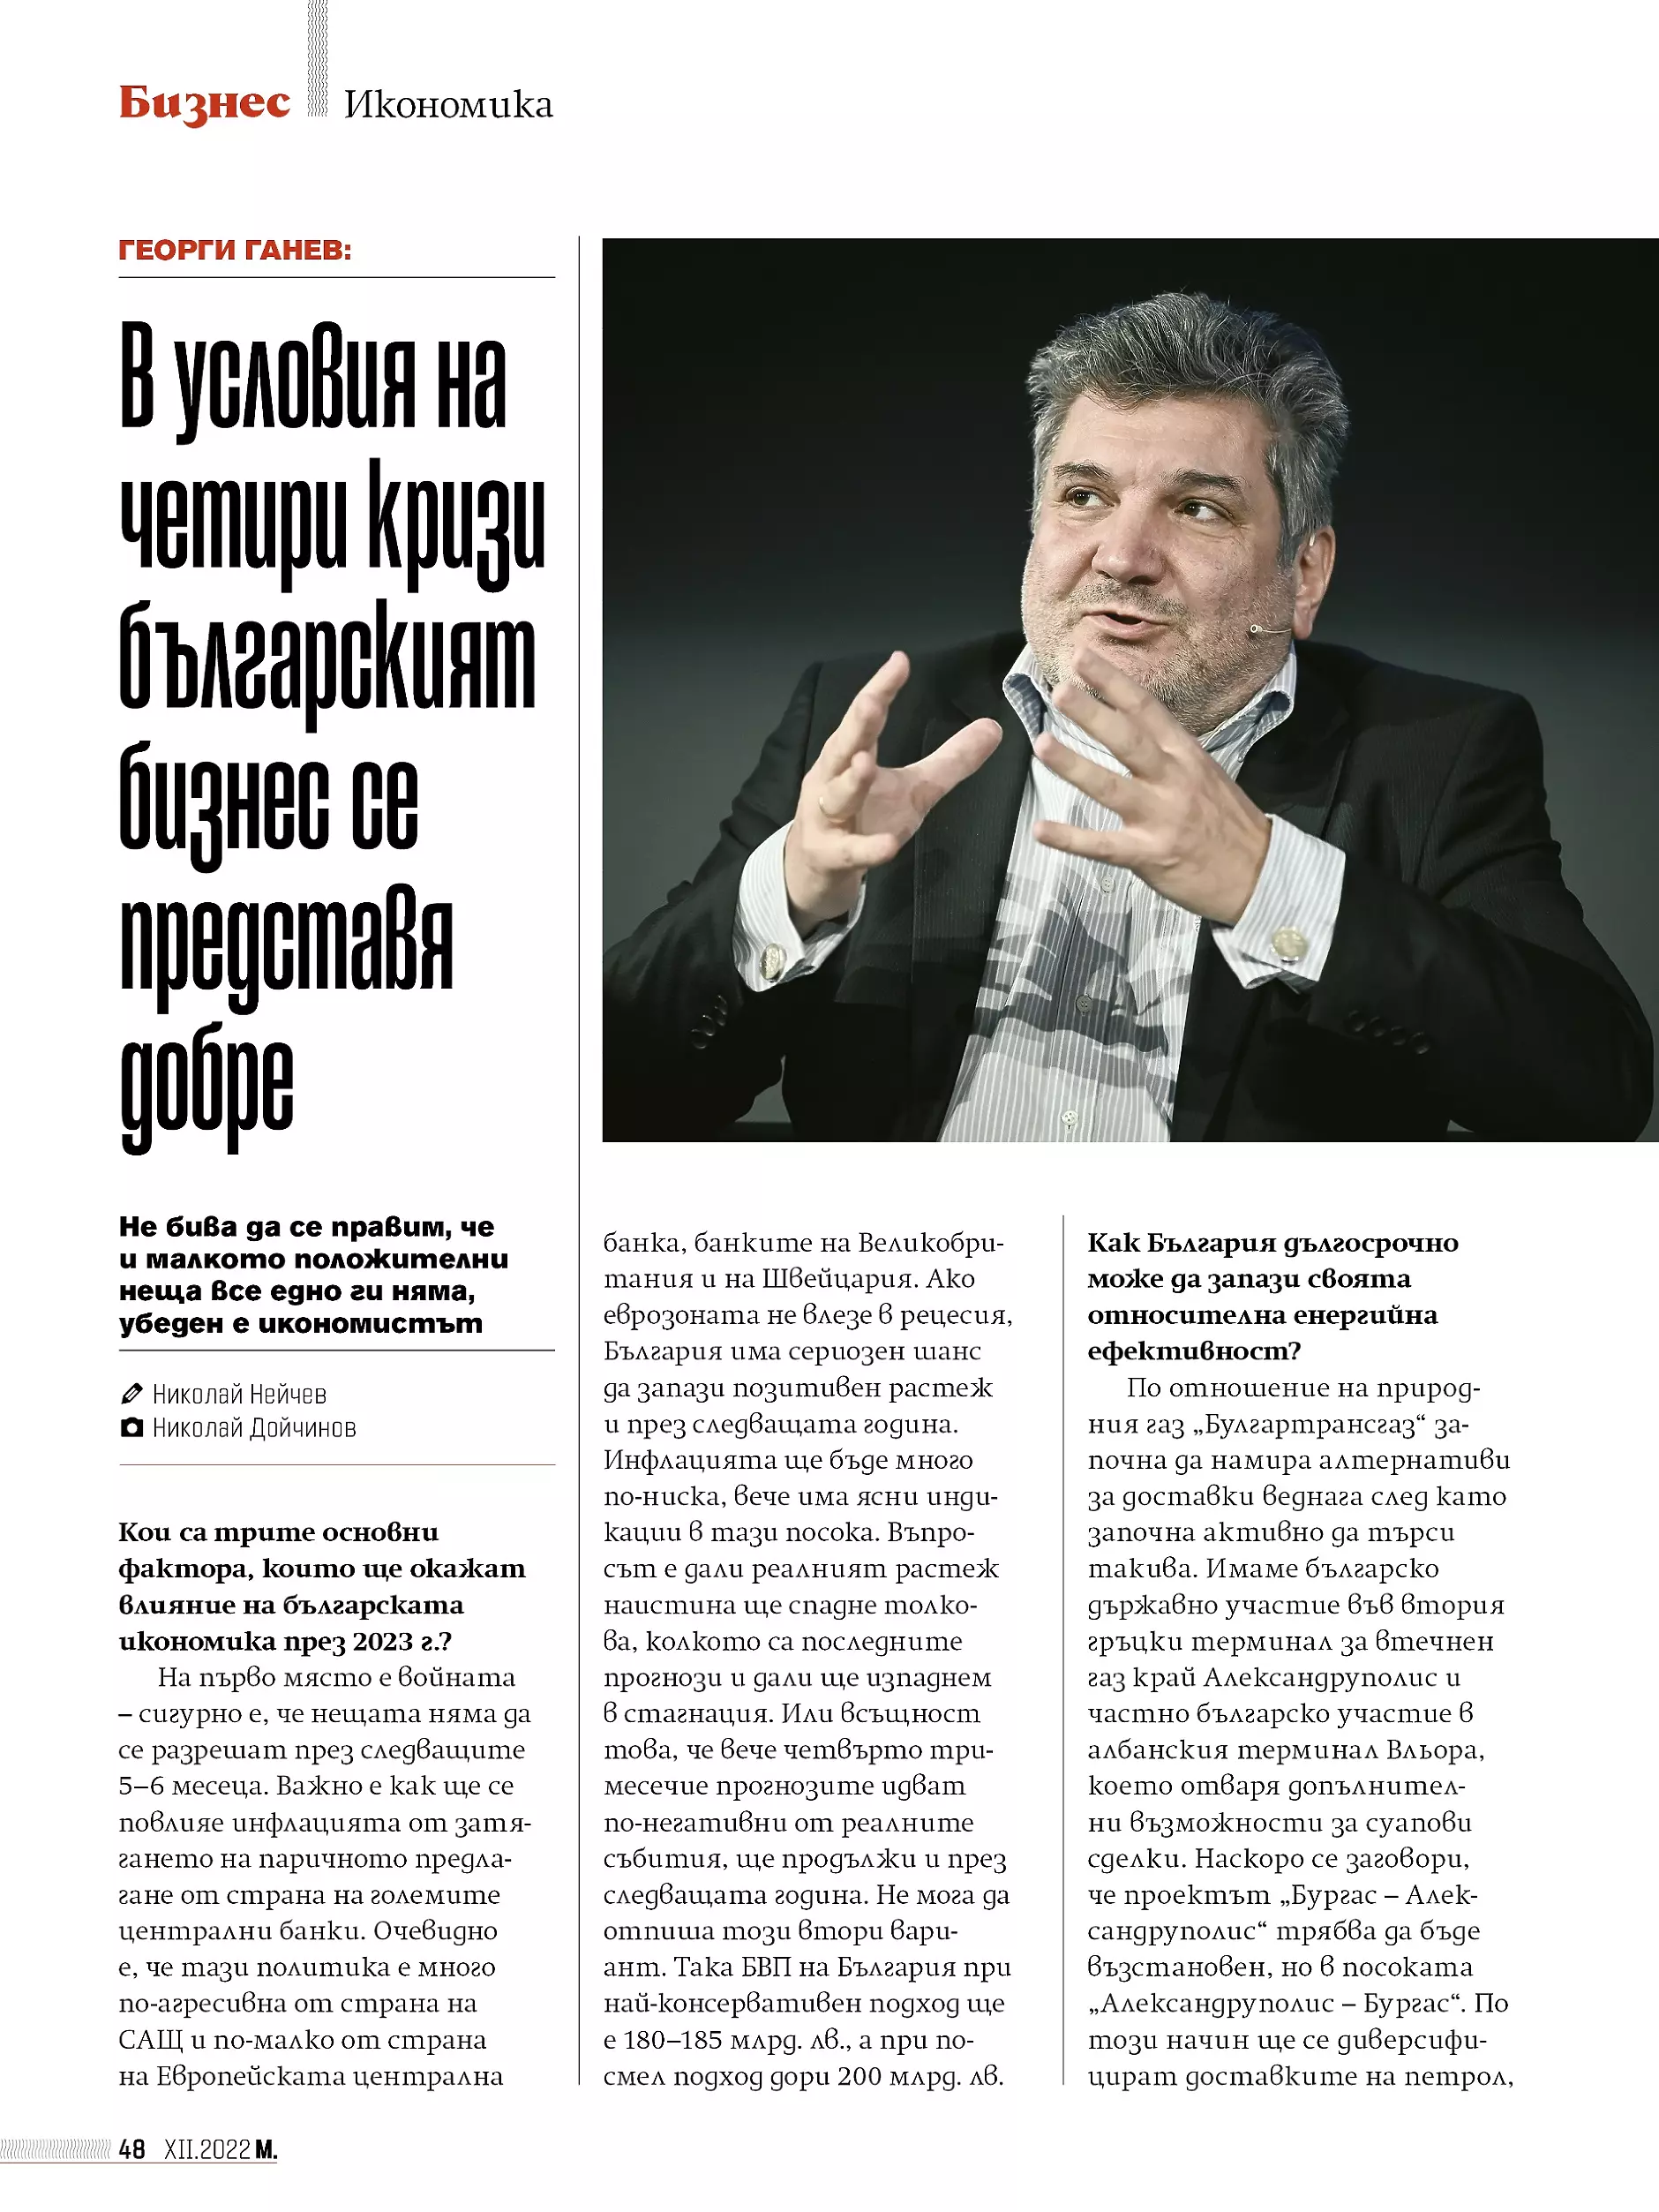 В условията на четири кризи българският бизнес се представя добре - икономистът Георги Ганев